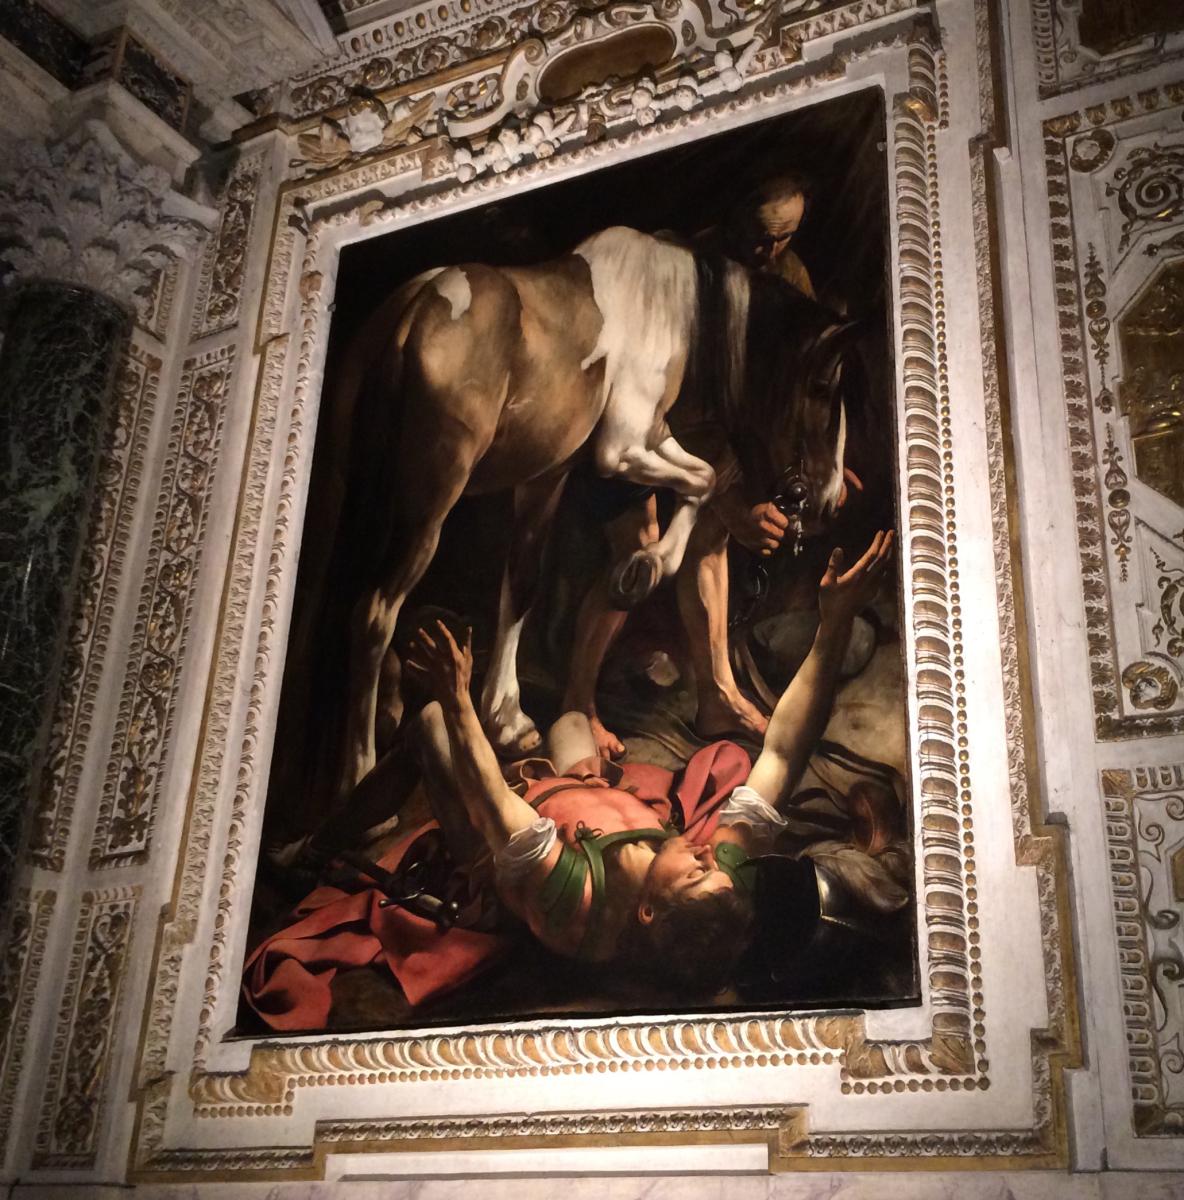 Nawrócenie Szawła - obraz Caravaggia, znajdujący się w kościele S. Maria del Popolo w Rzymie